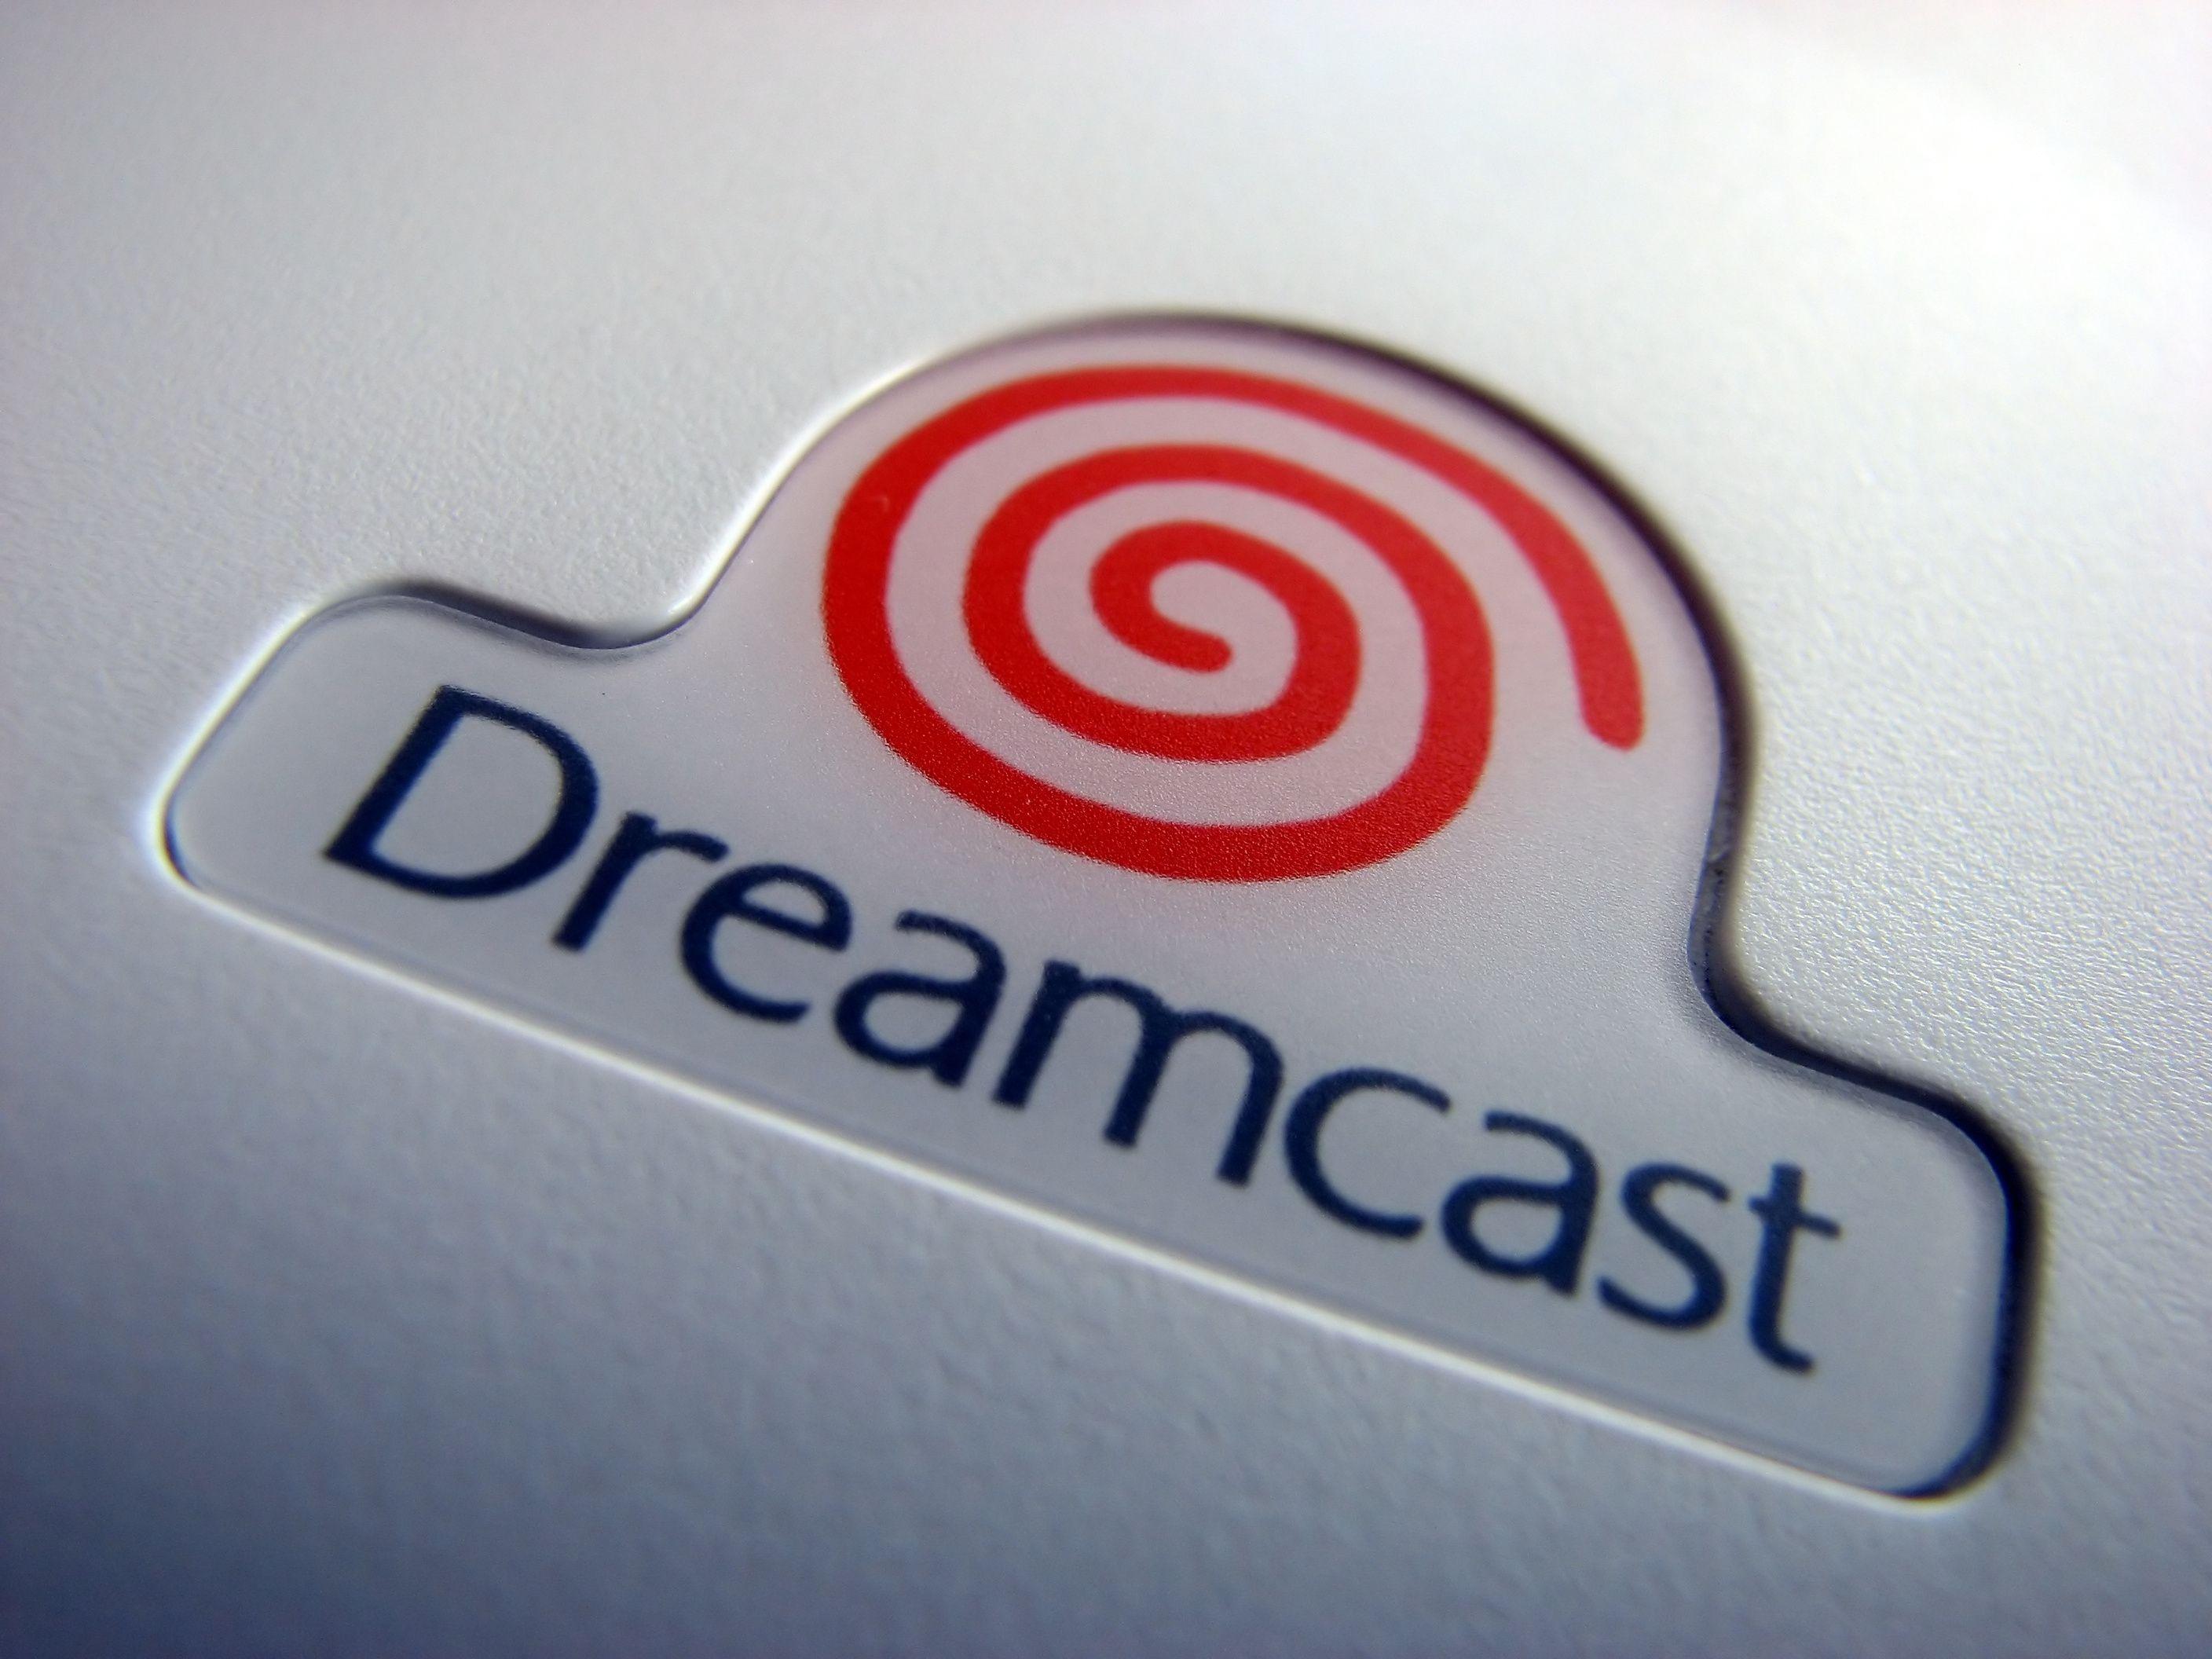 Dreamcast Logo - File:Sega Dreamcast logo on case.jpg - Wikimedia Commons